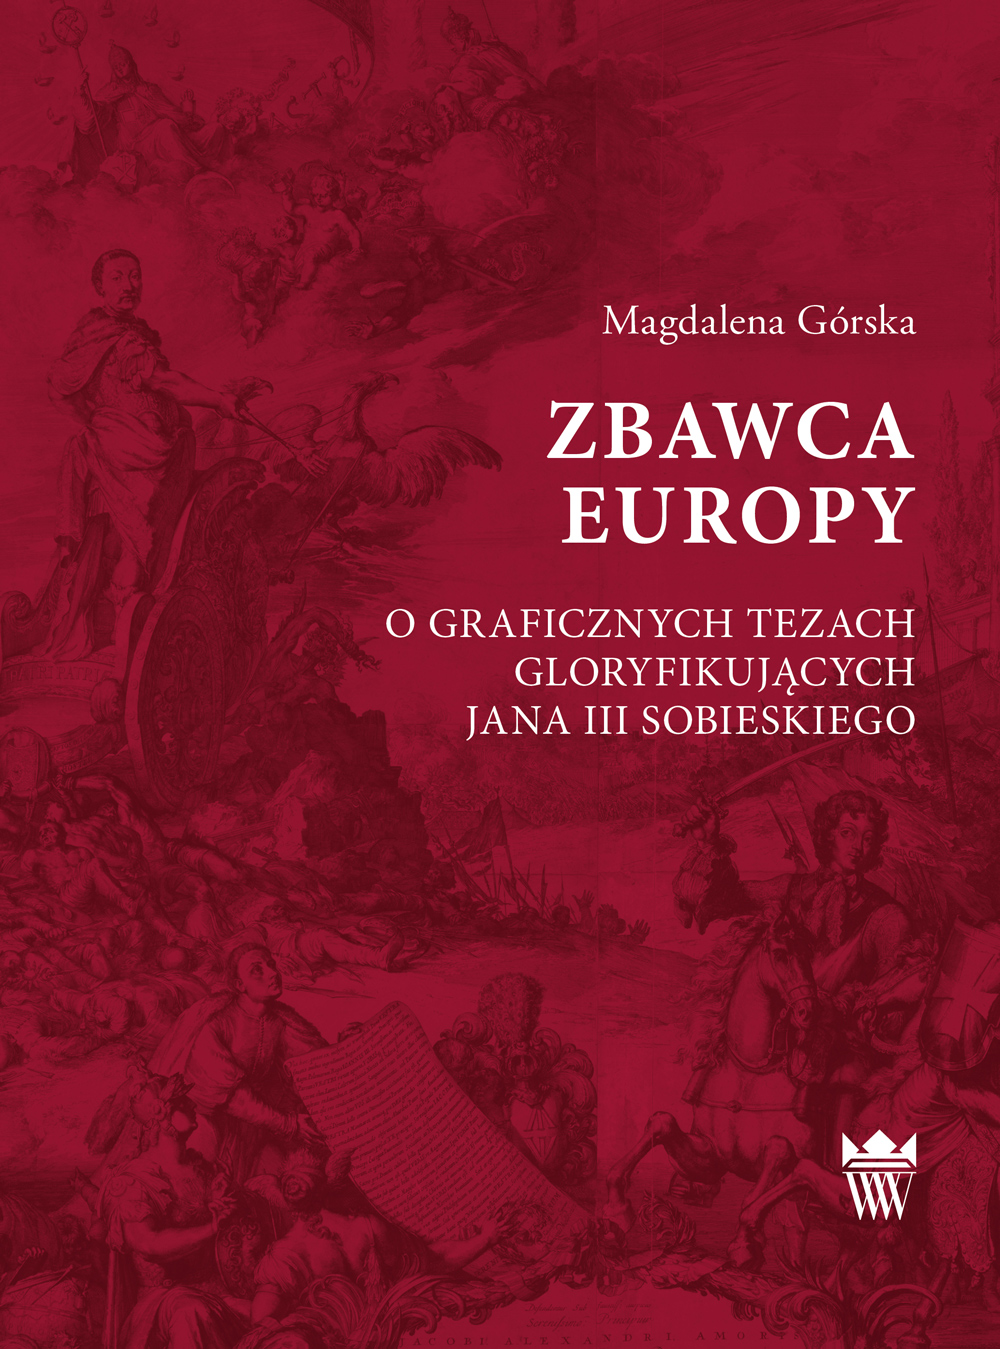 Magdalena Górska, Zbawca Europy. O graficznych tezach gloryfikujących Jana III Sobieskiego